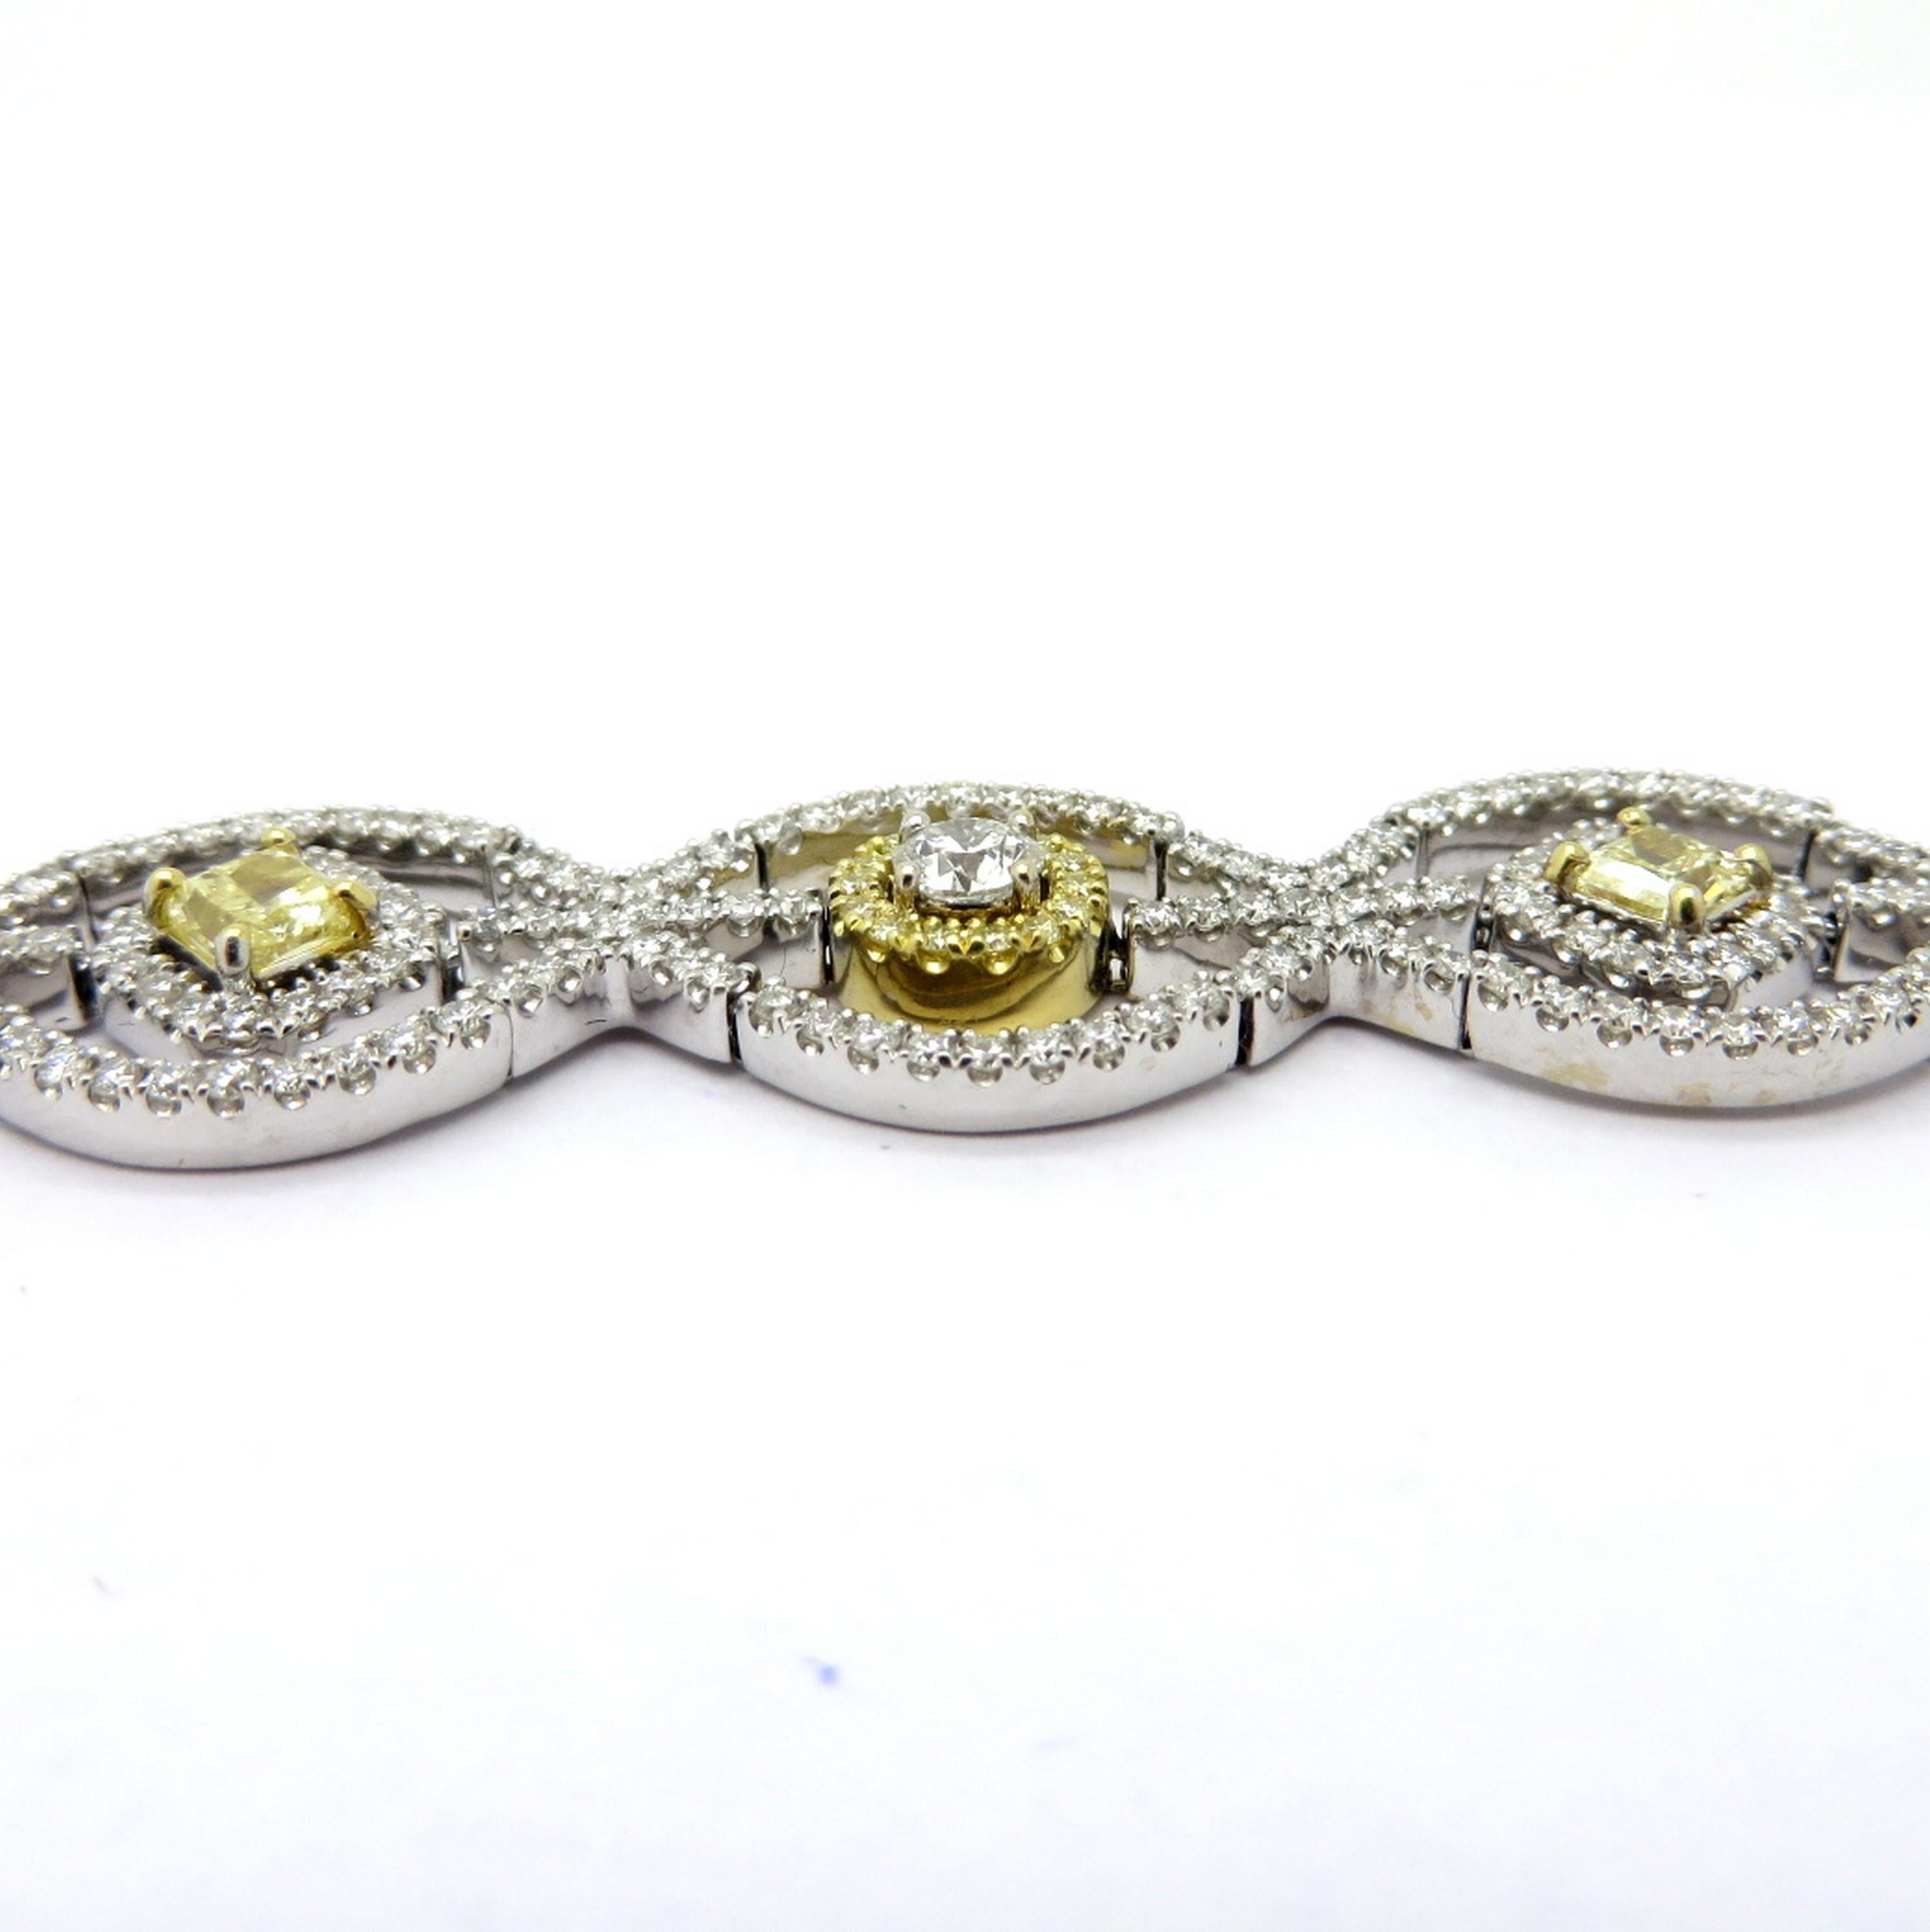 Bracelet tennis en or bicolore 18K à diamants jaunes radiant. Présentant cinq diamants de taille rayonnante jaune de fantaisie, sertis à quatre griffes, pesant un total combiné d'environ 1,70 carats, présentant une pureté VS1. Accentué par de